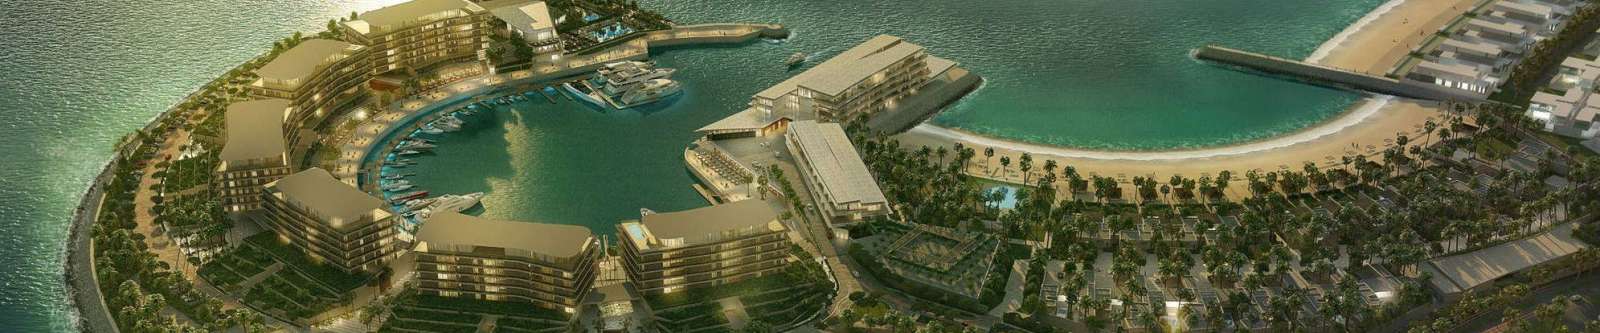 Bvlgari Resort and Residencies, Dubai, UAE